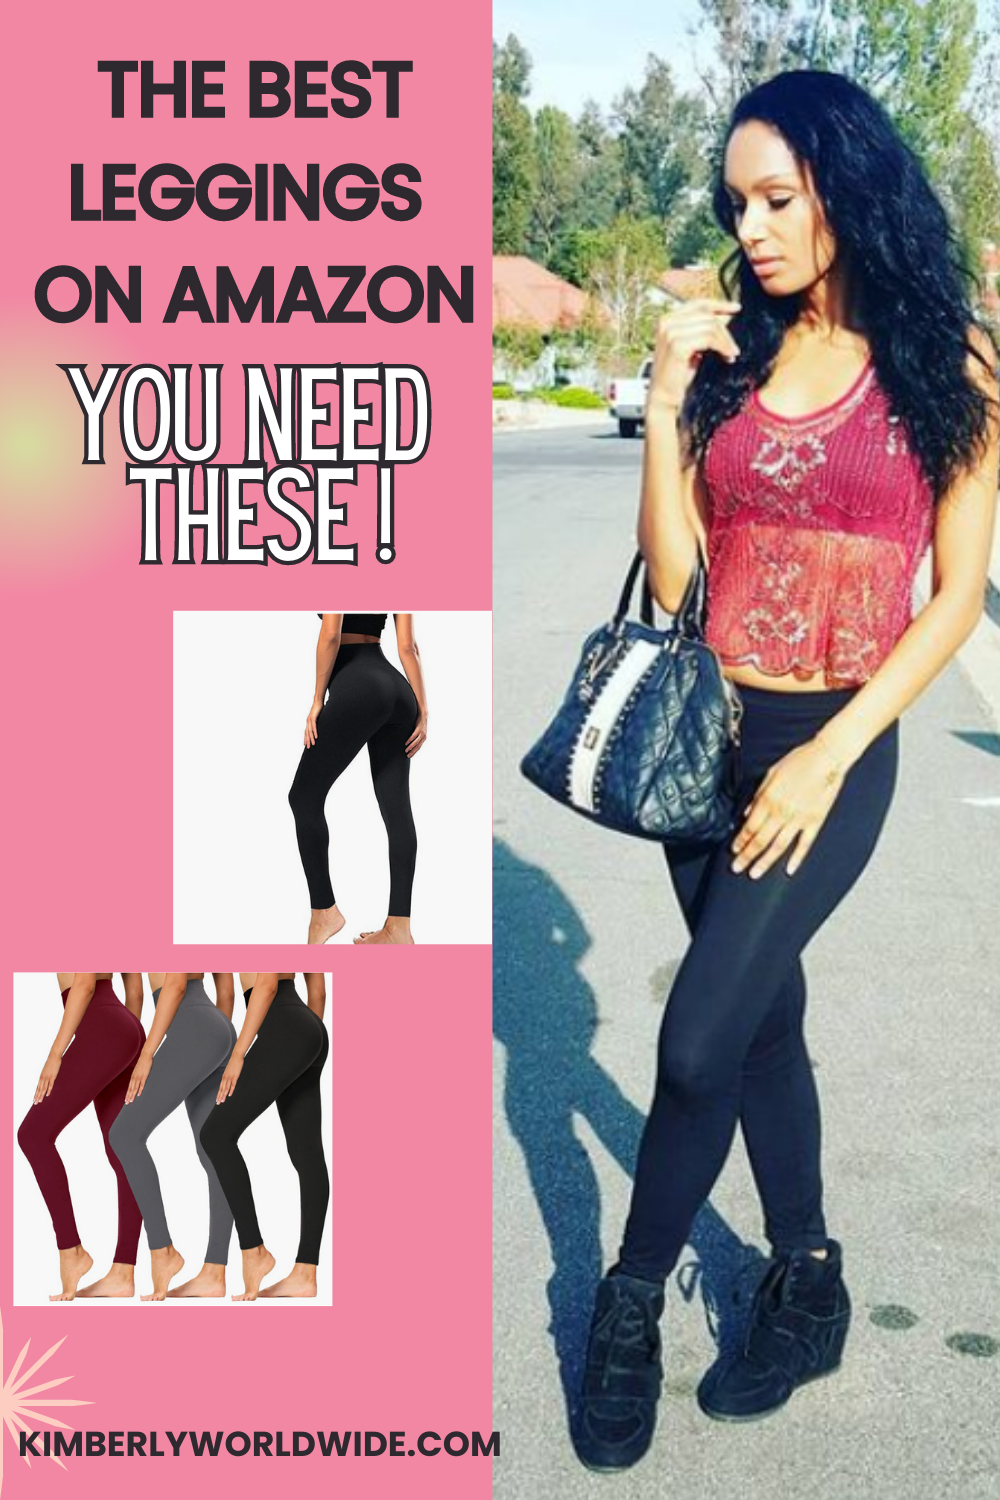 The Best Leggings on Amazon! | Kimberly Worldwide